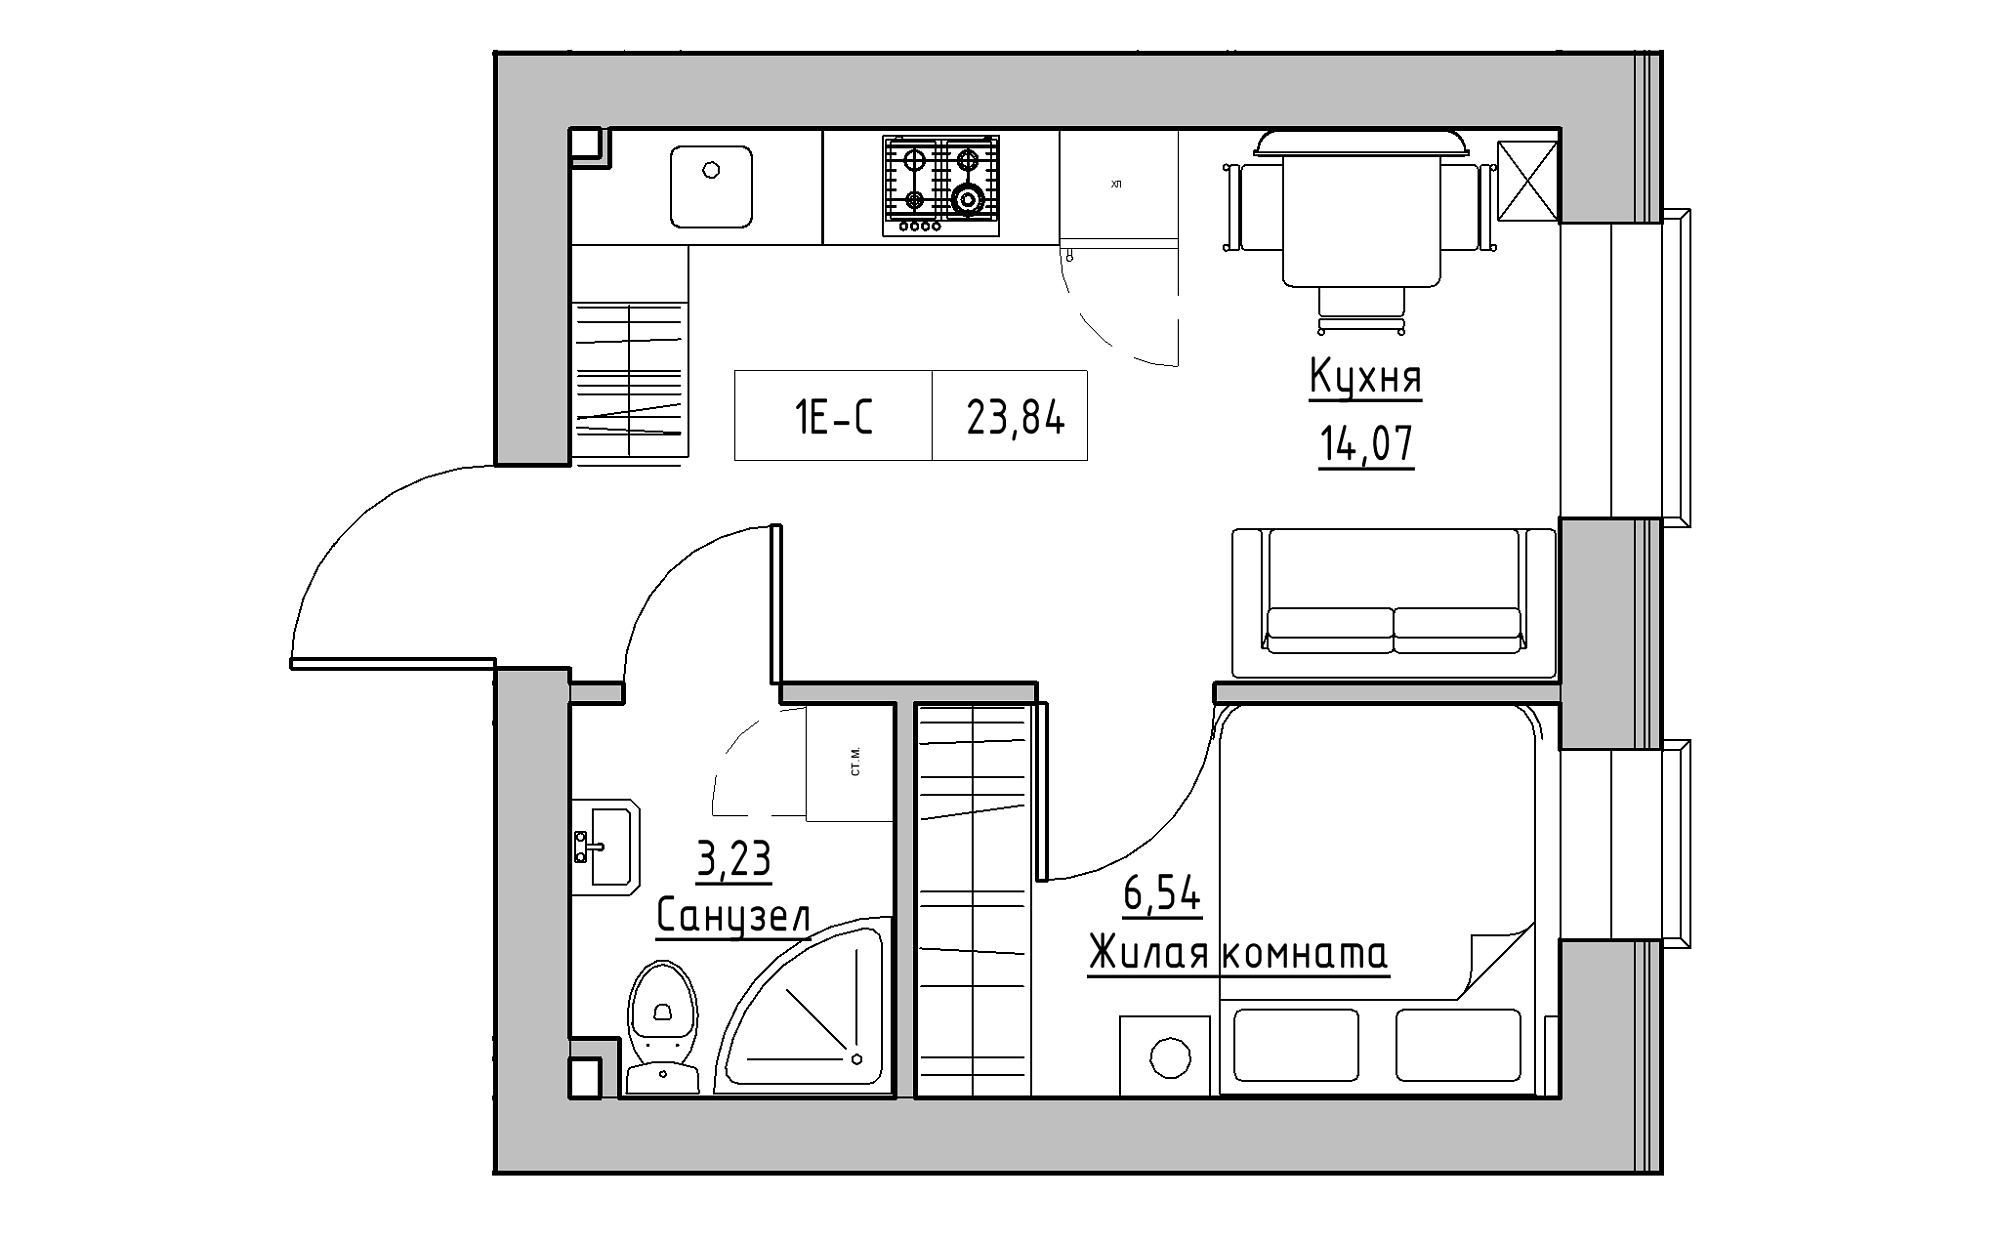 Планування 1-к квартира площею 23.84м2, KS-022-01/0011.